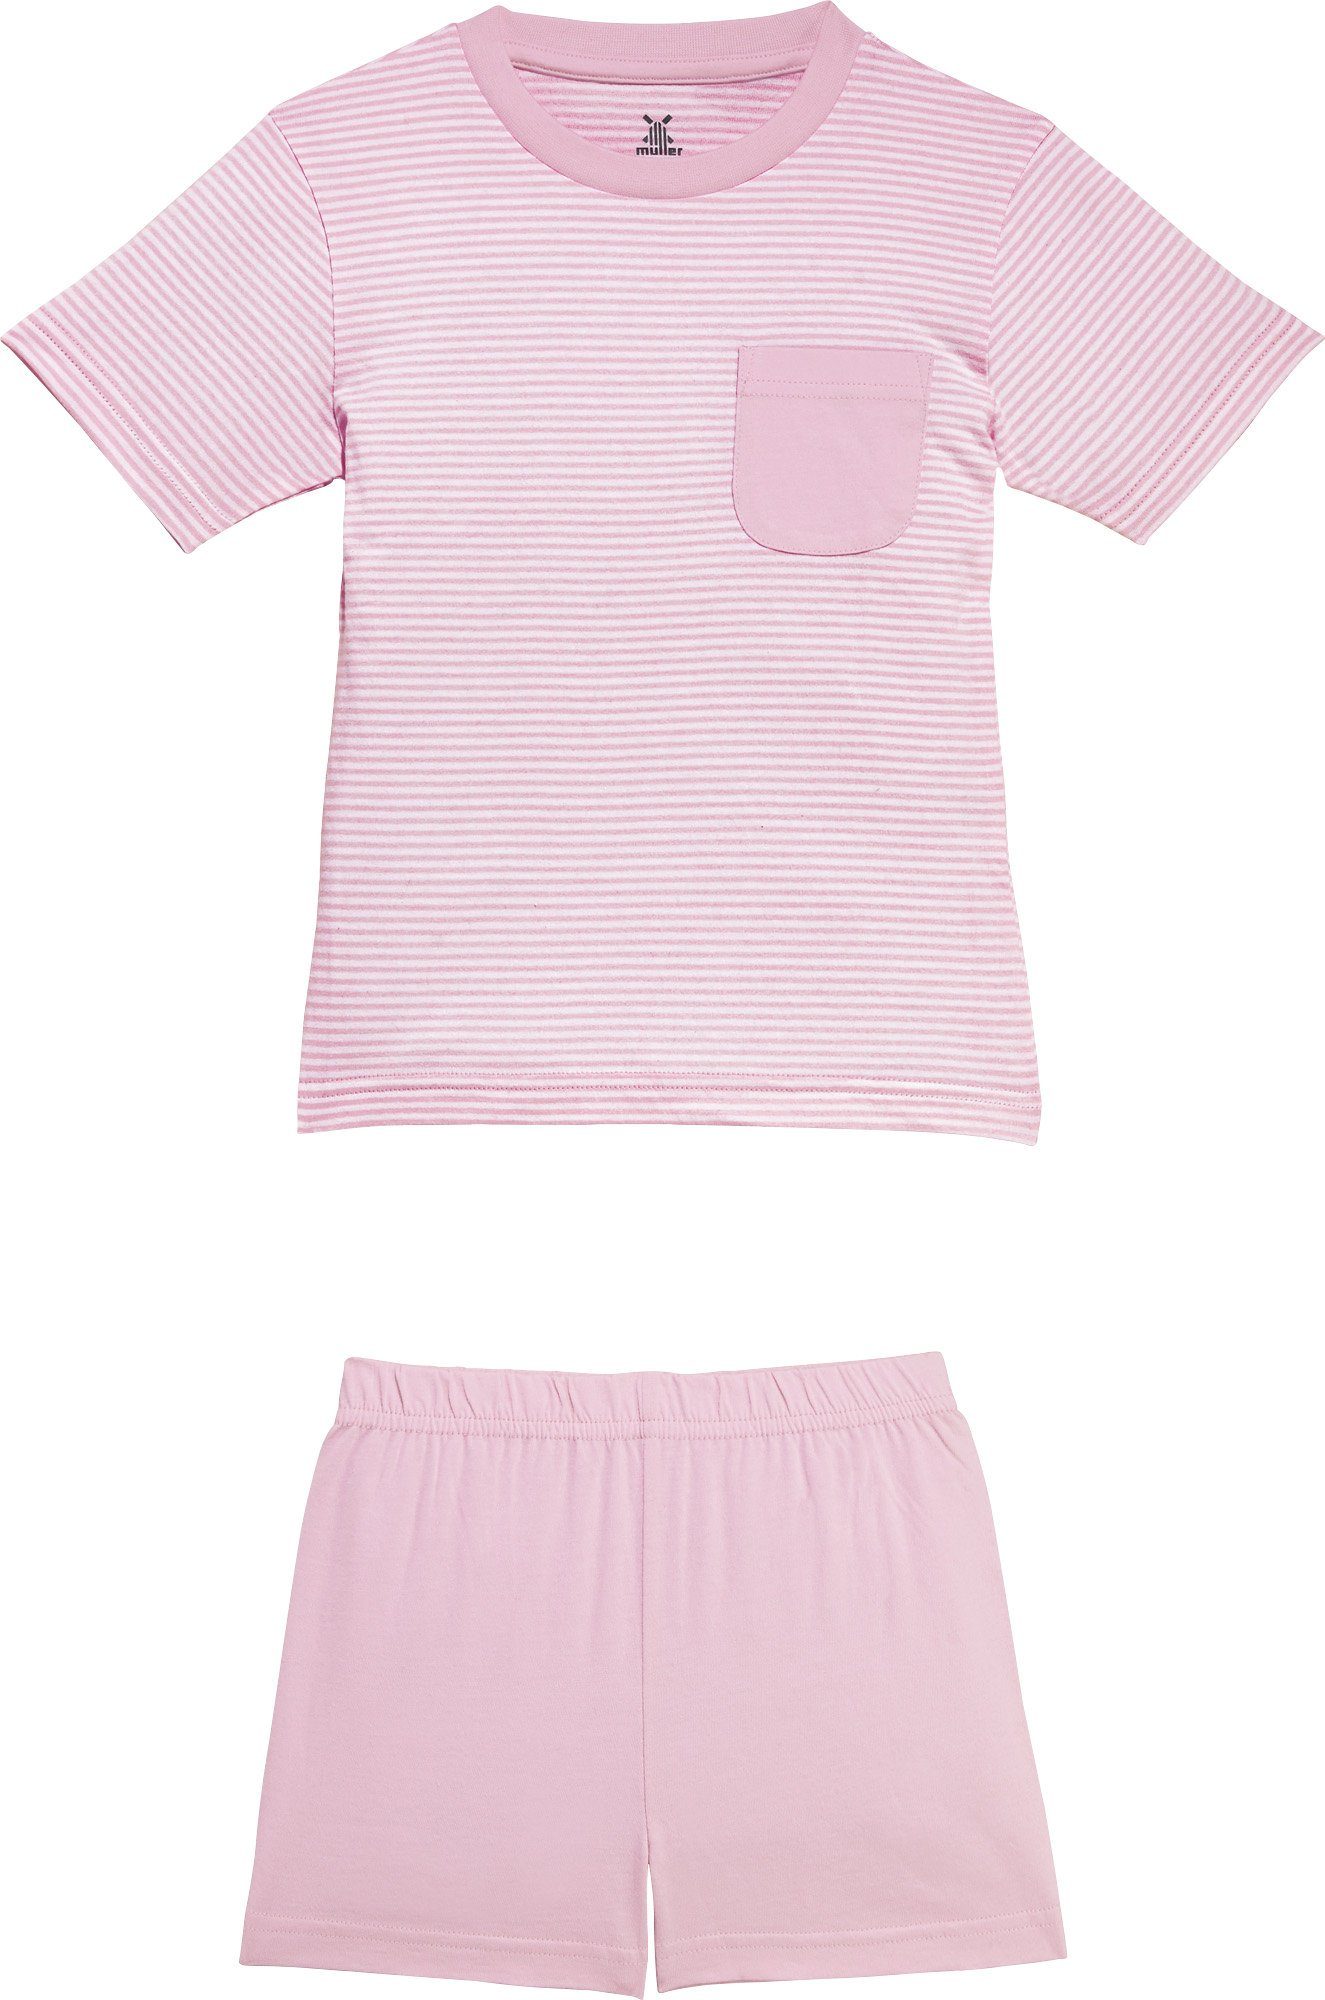 Erwin Müller Pyjama Kinder-Shorty Single-Jersey Streifen